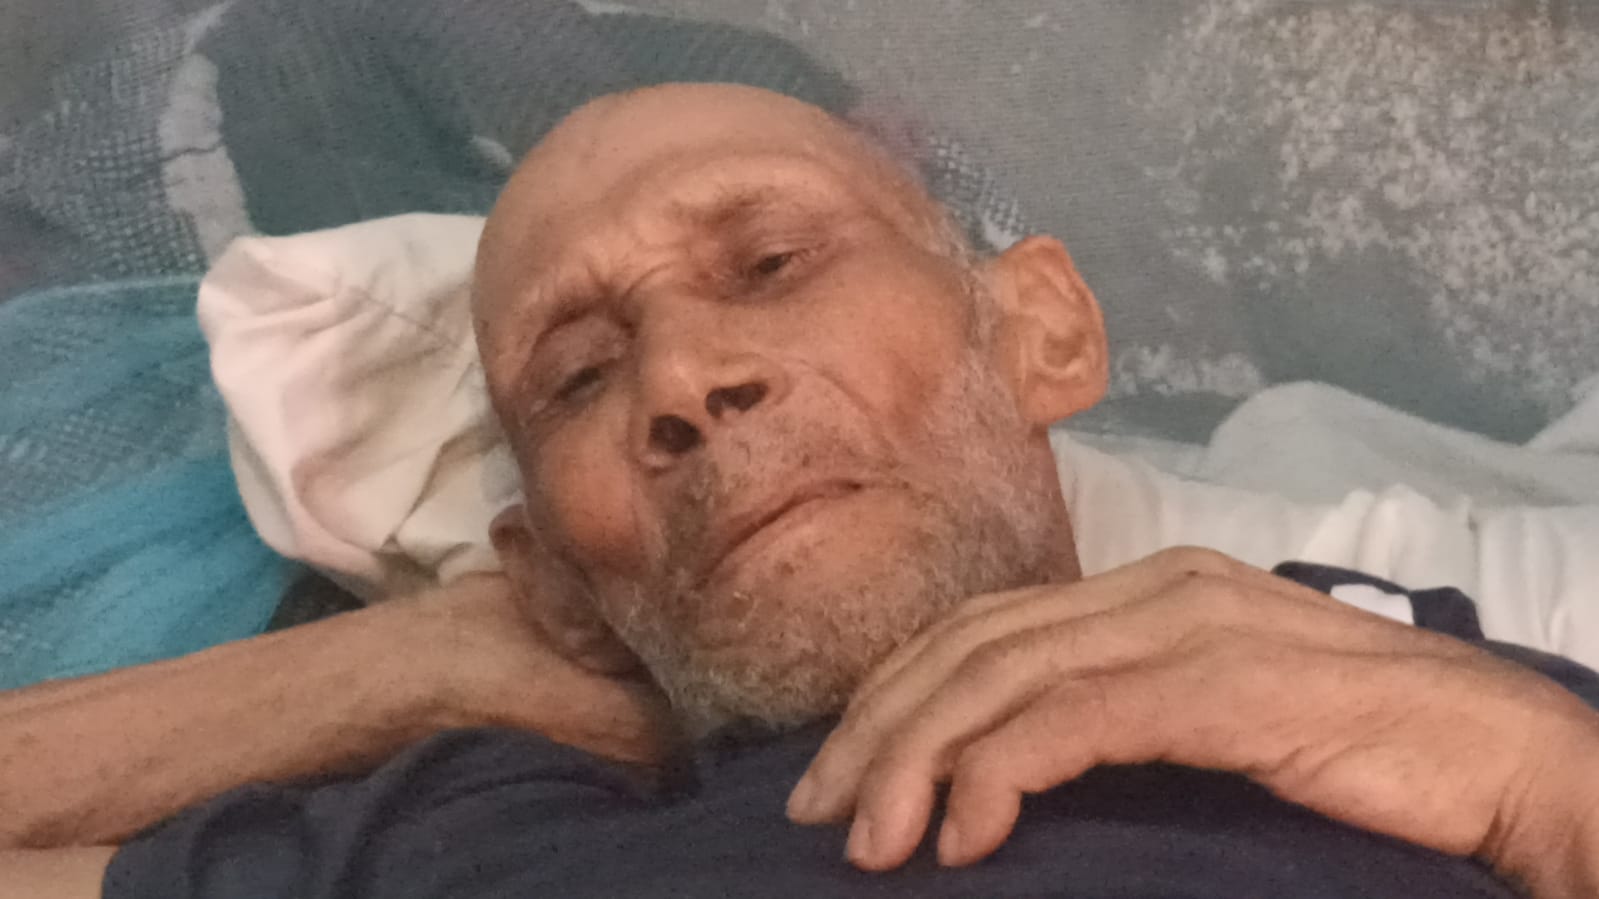 En Samaná piden ayuda para anciano de 75 años